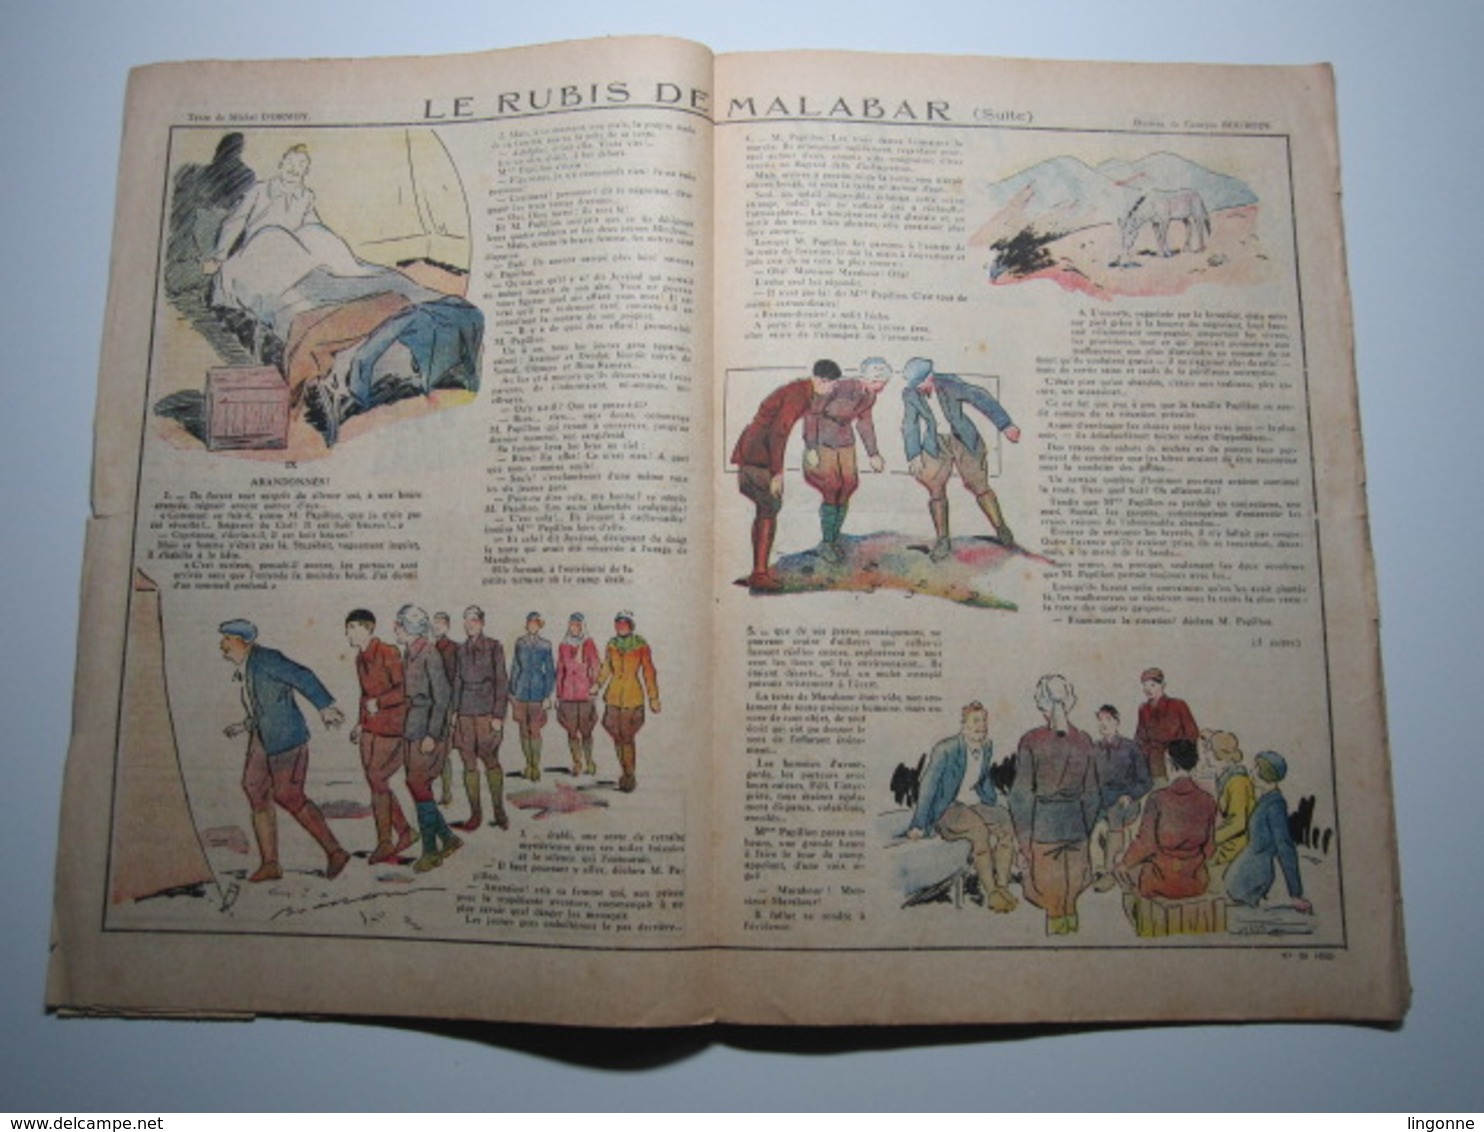 30 Septembre 1934 PIERROT JOURNAL DES GARÇONS 25Cts - Pierrot